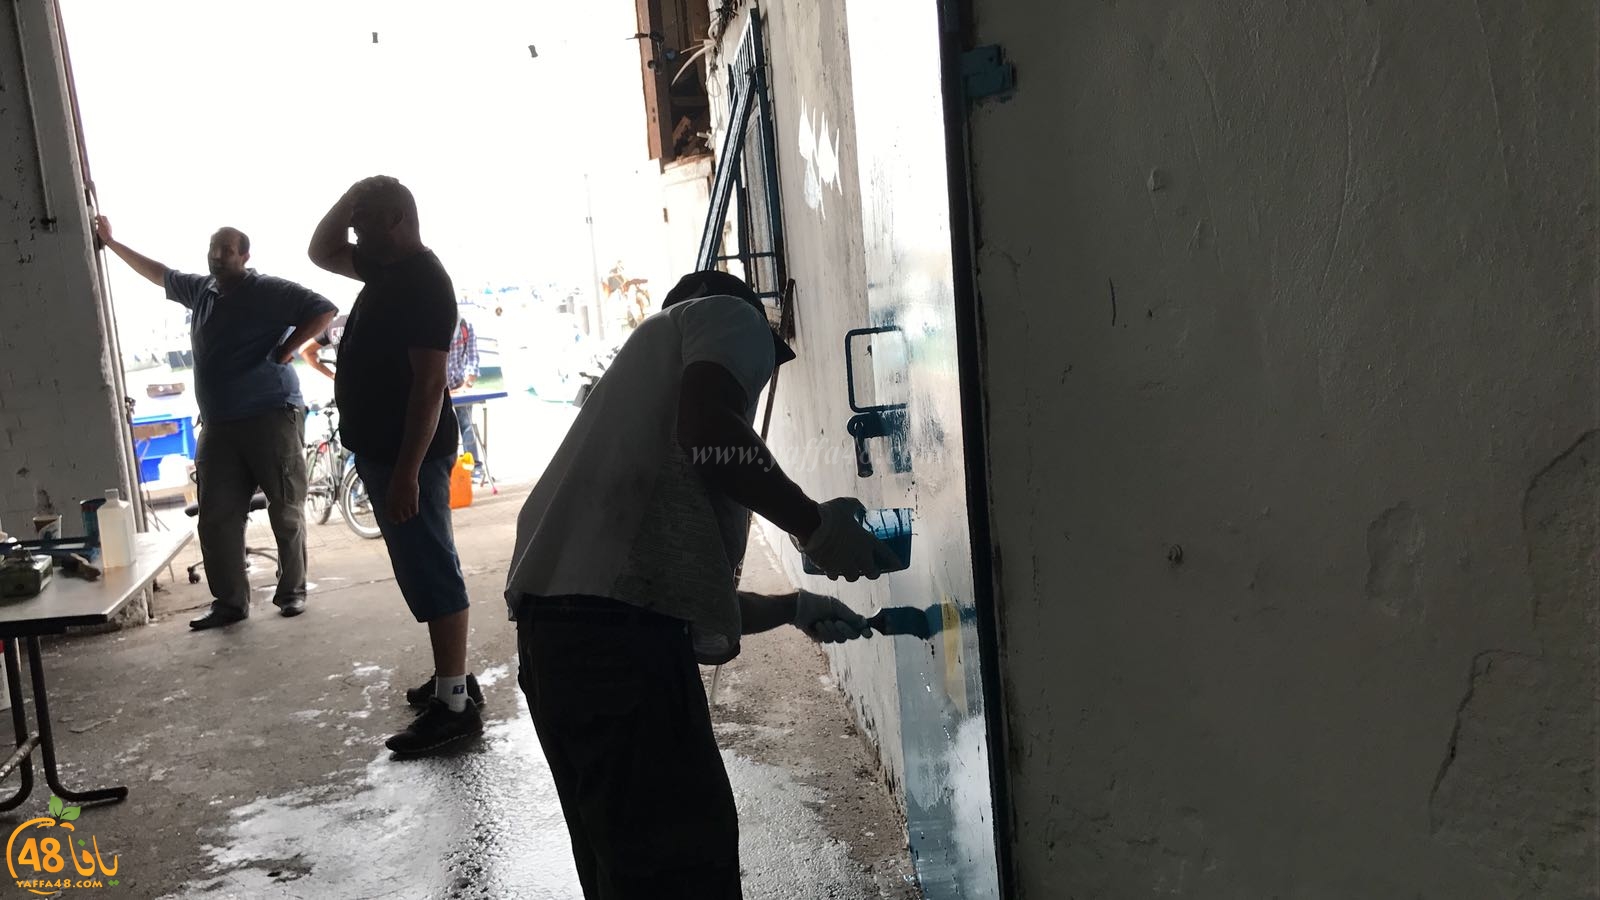 بالفيديو: حملة لتنظيف وتنظيم مخازن الصيادين في ميناء يافا 